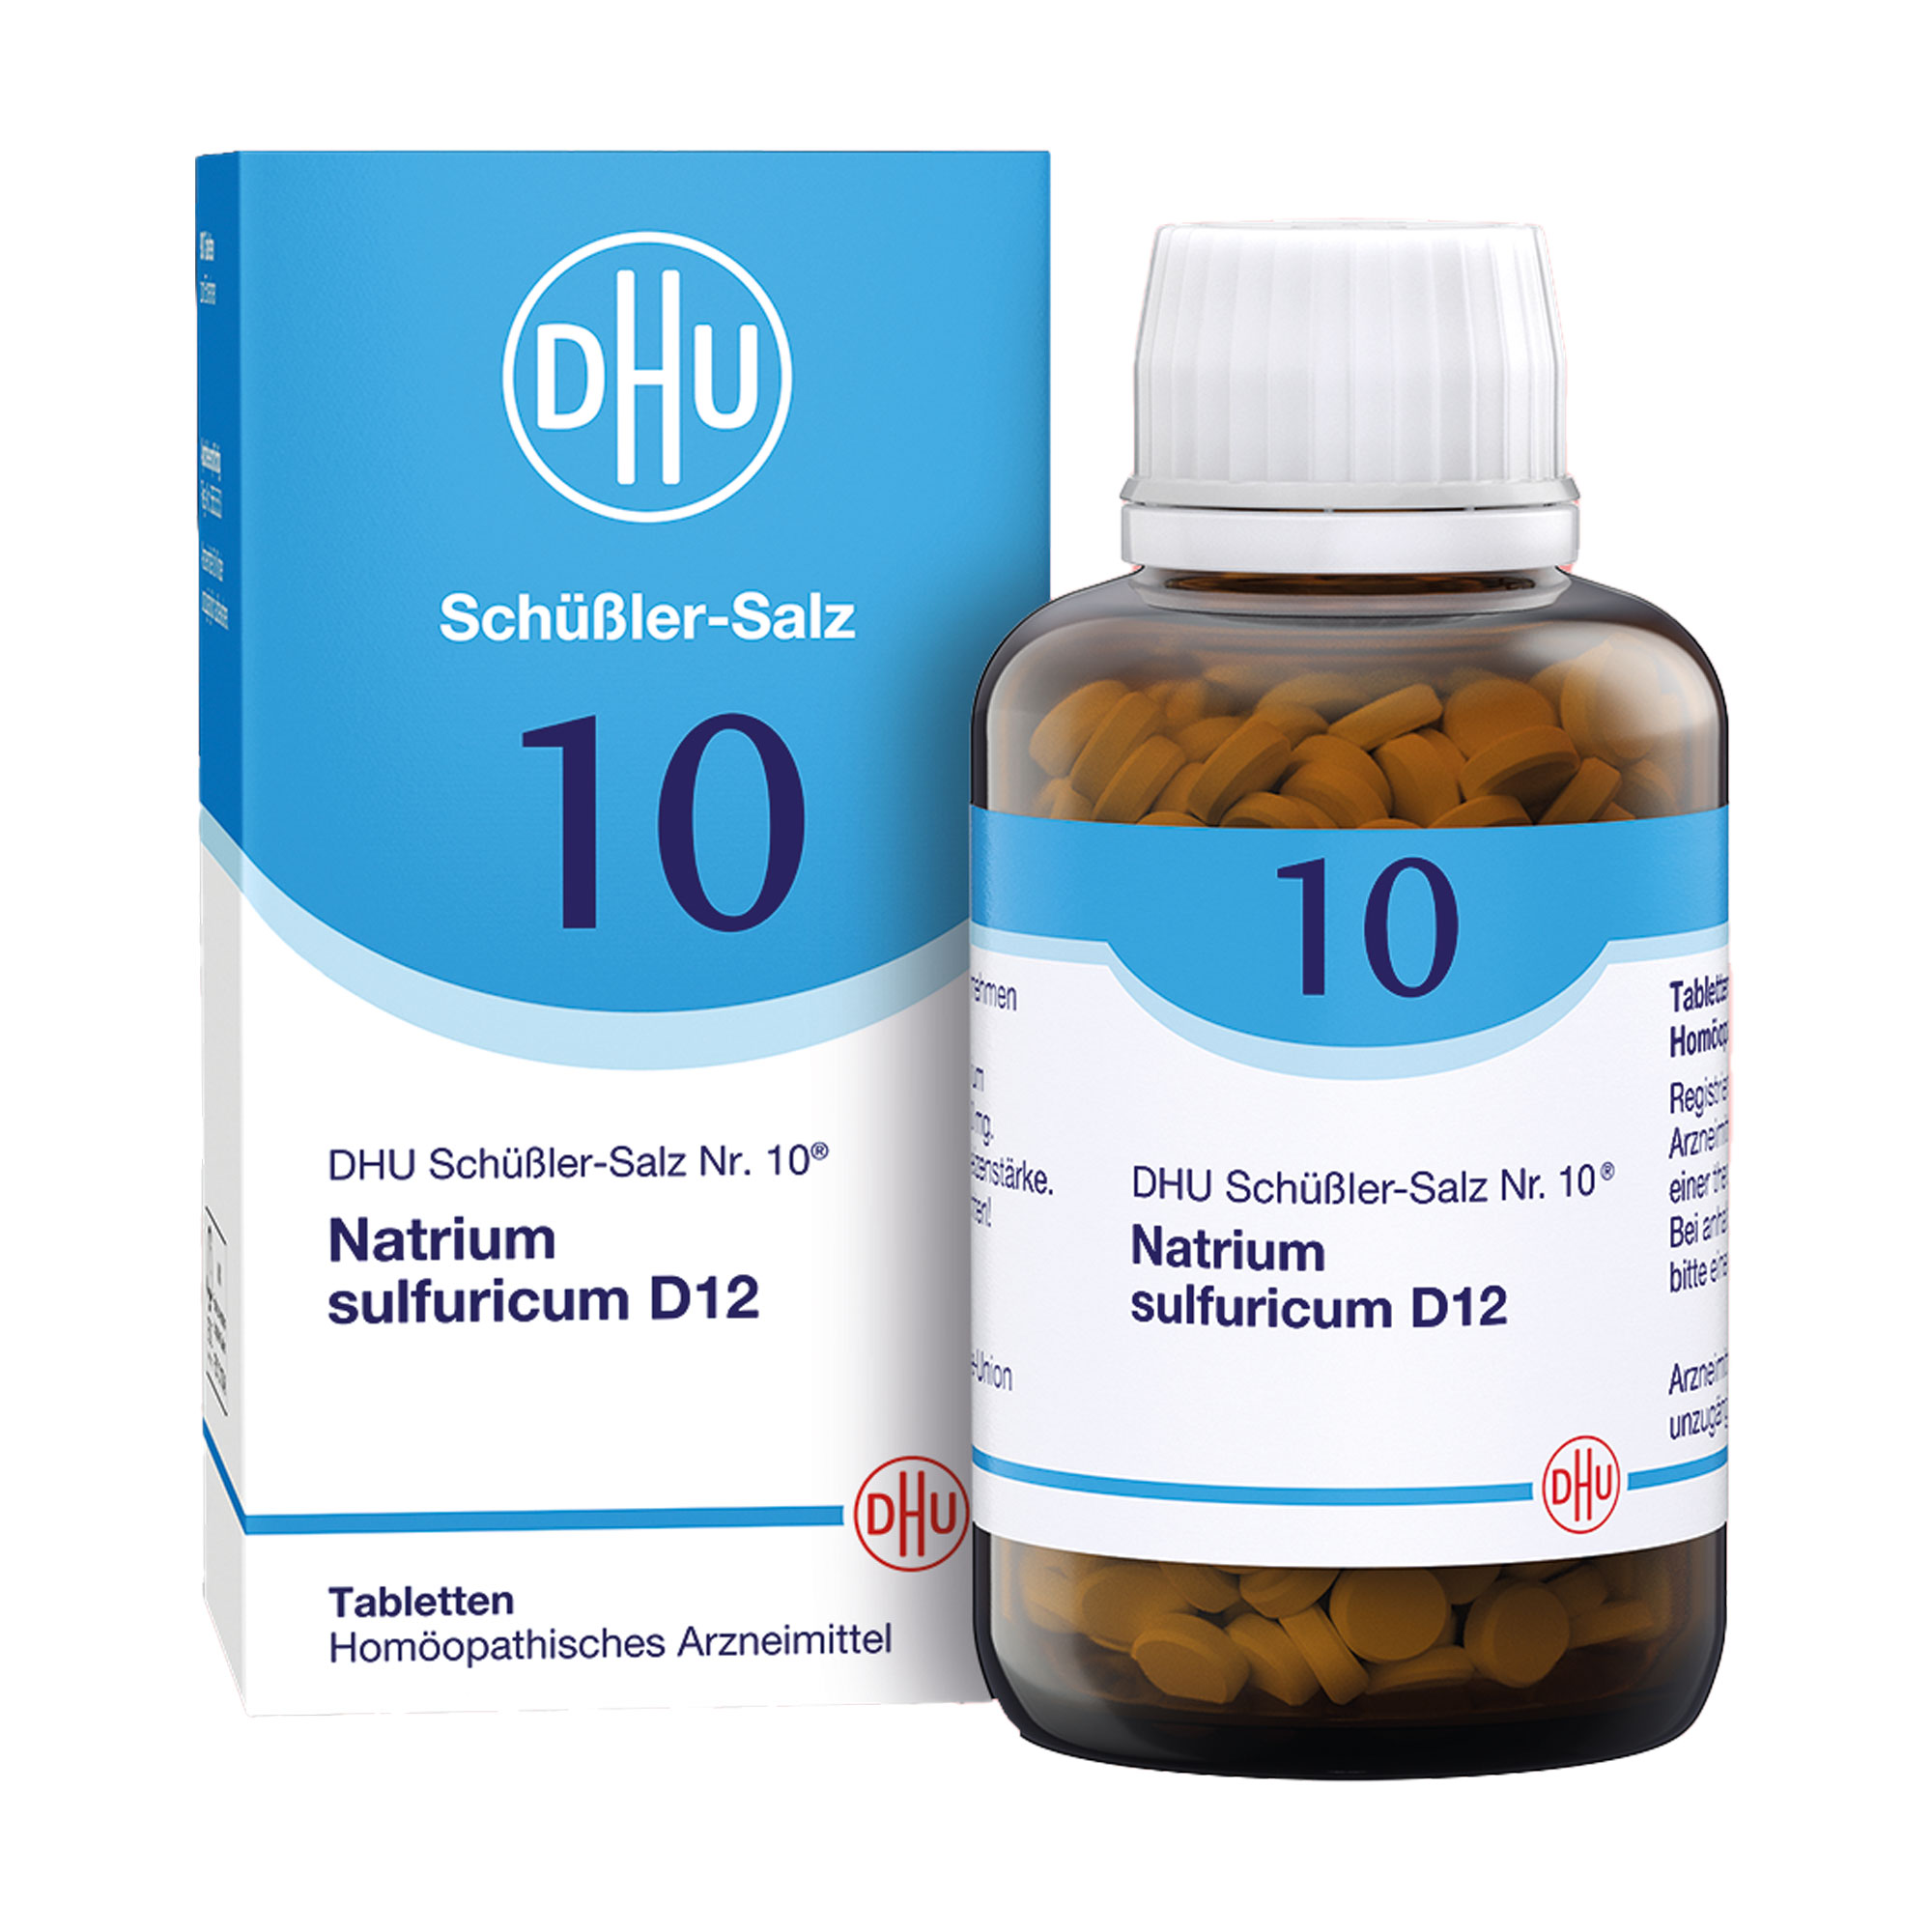 Homöopathisches Arzneimittel mit Natrium sulfuricum Trit. D12.